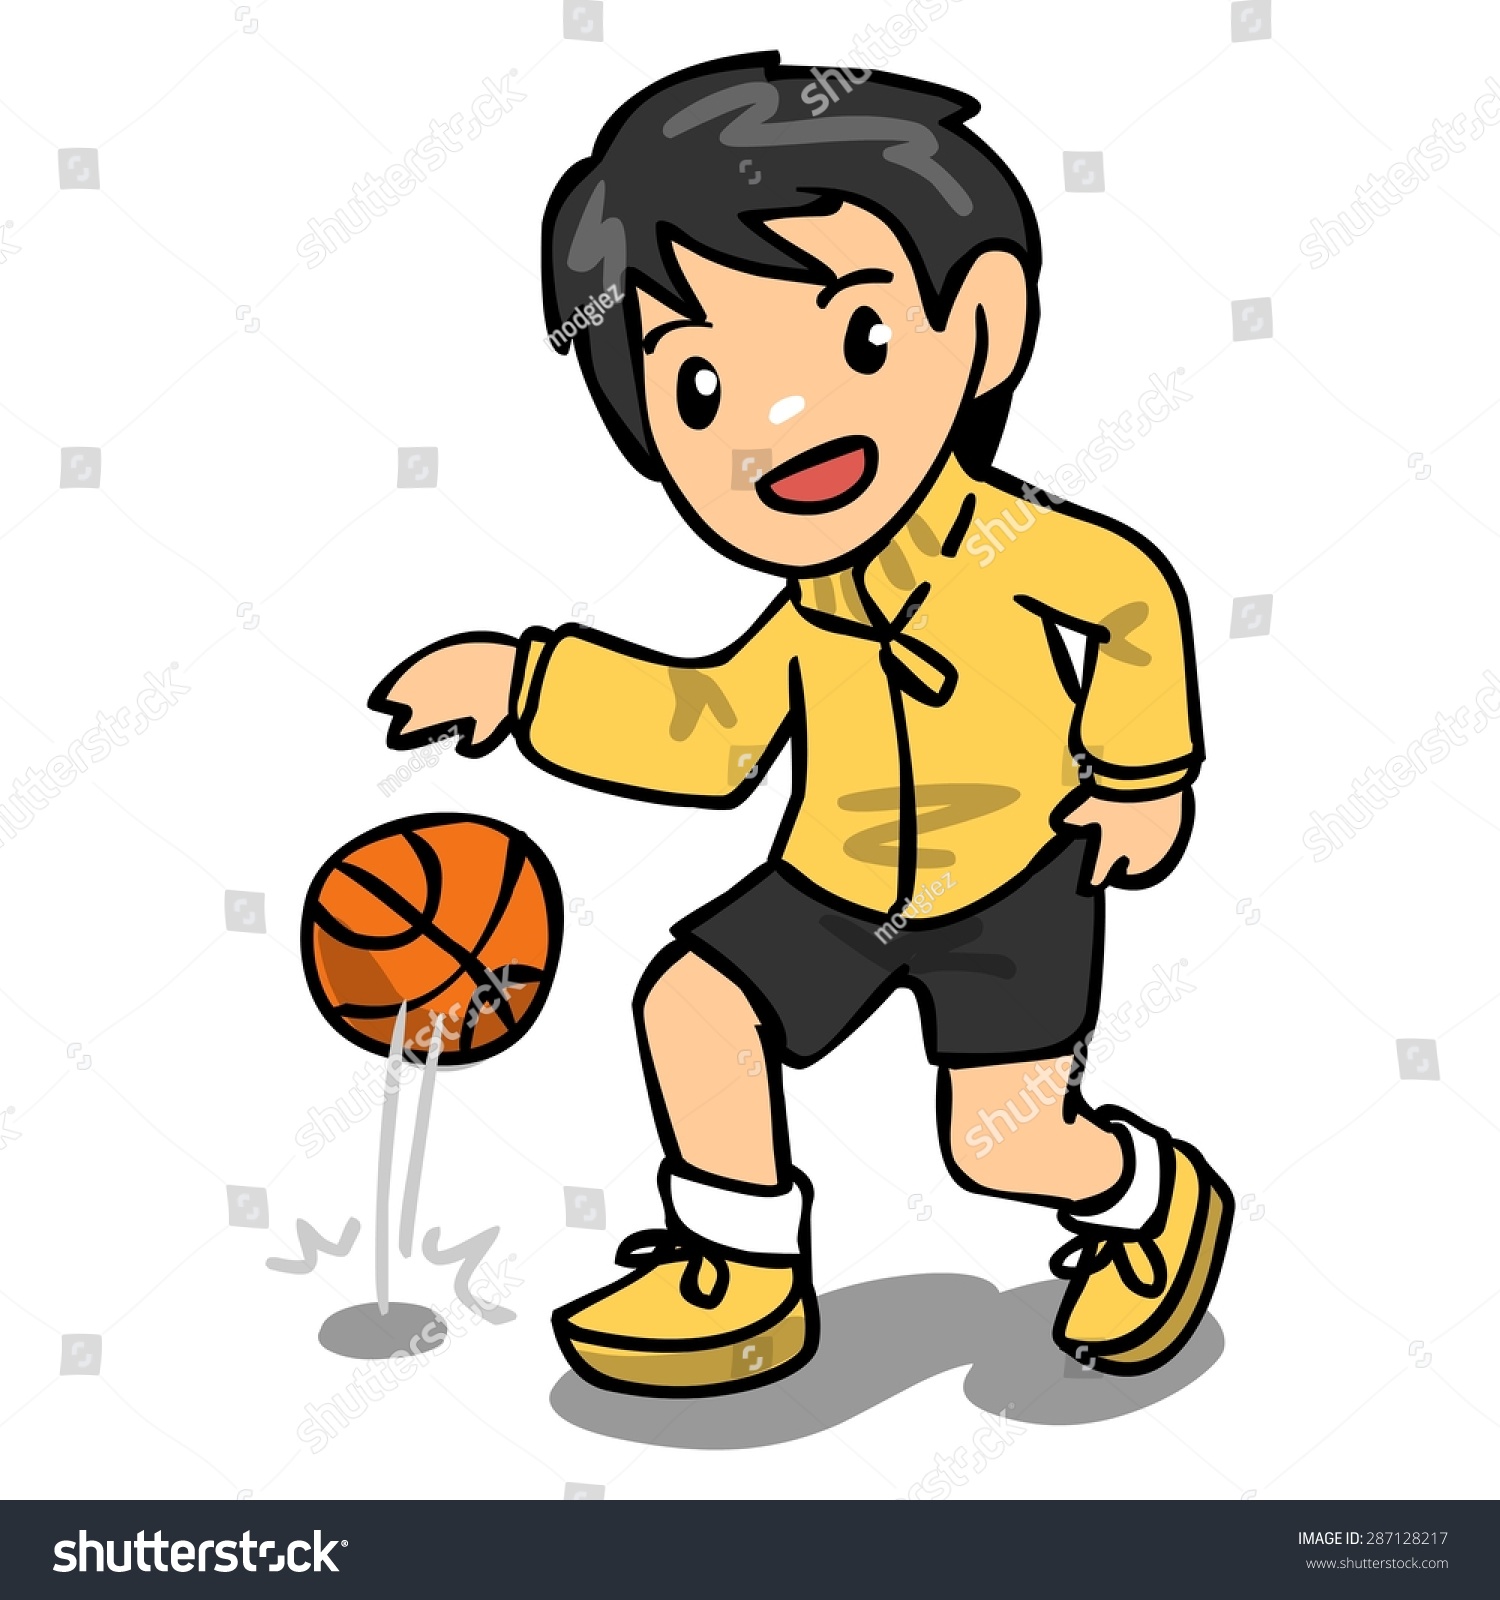 Basketball Stock Illustration 287128217 - Shutterstock